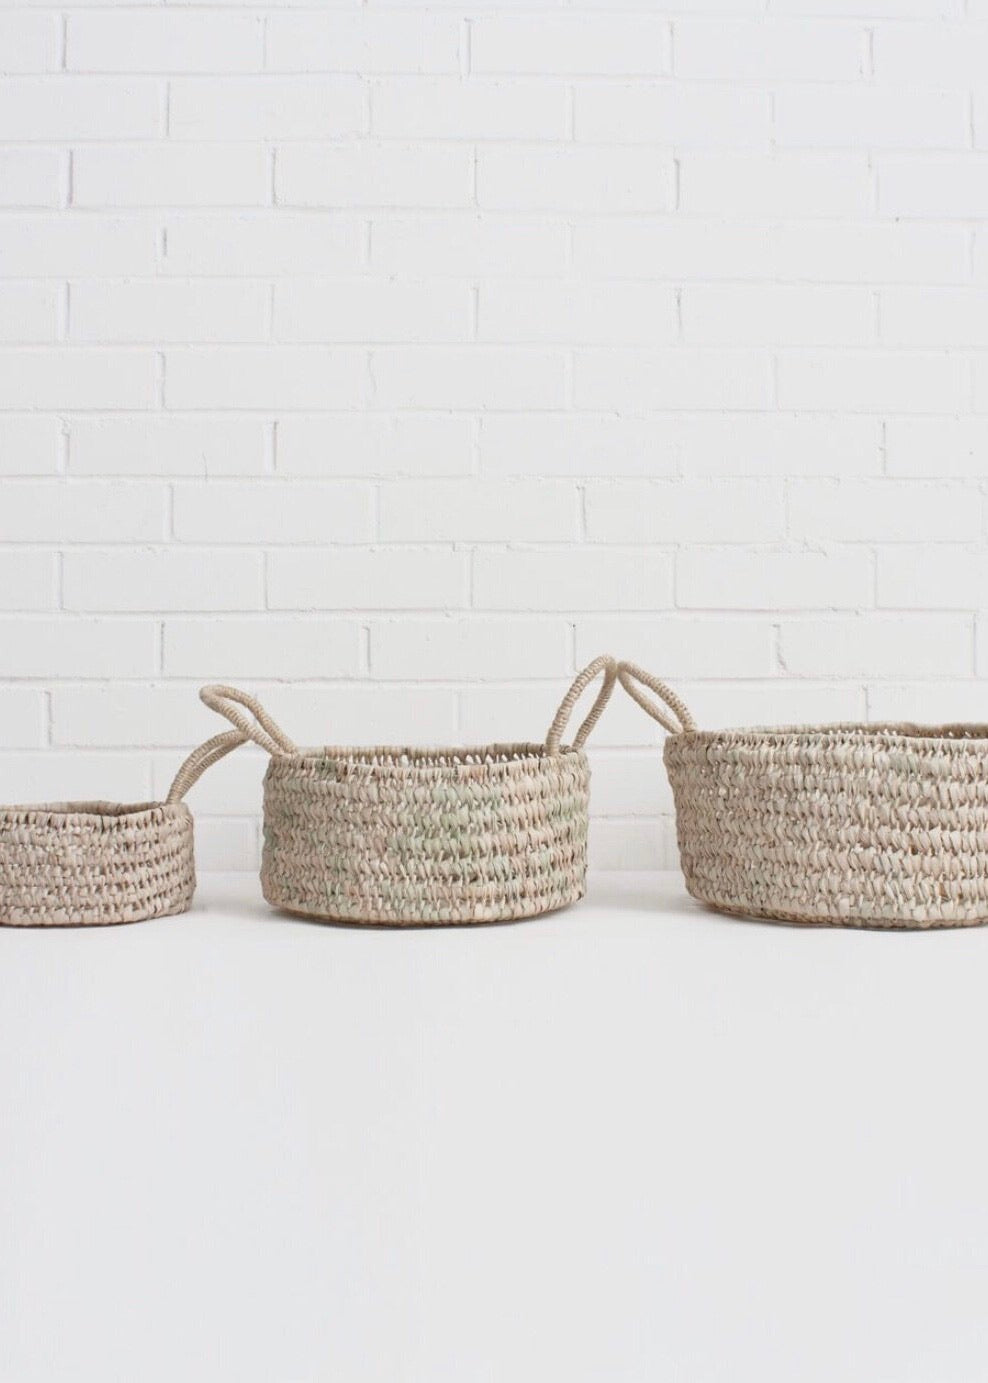 Bohemia Design - Round Storage Baskets